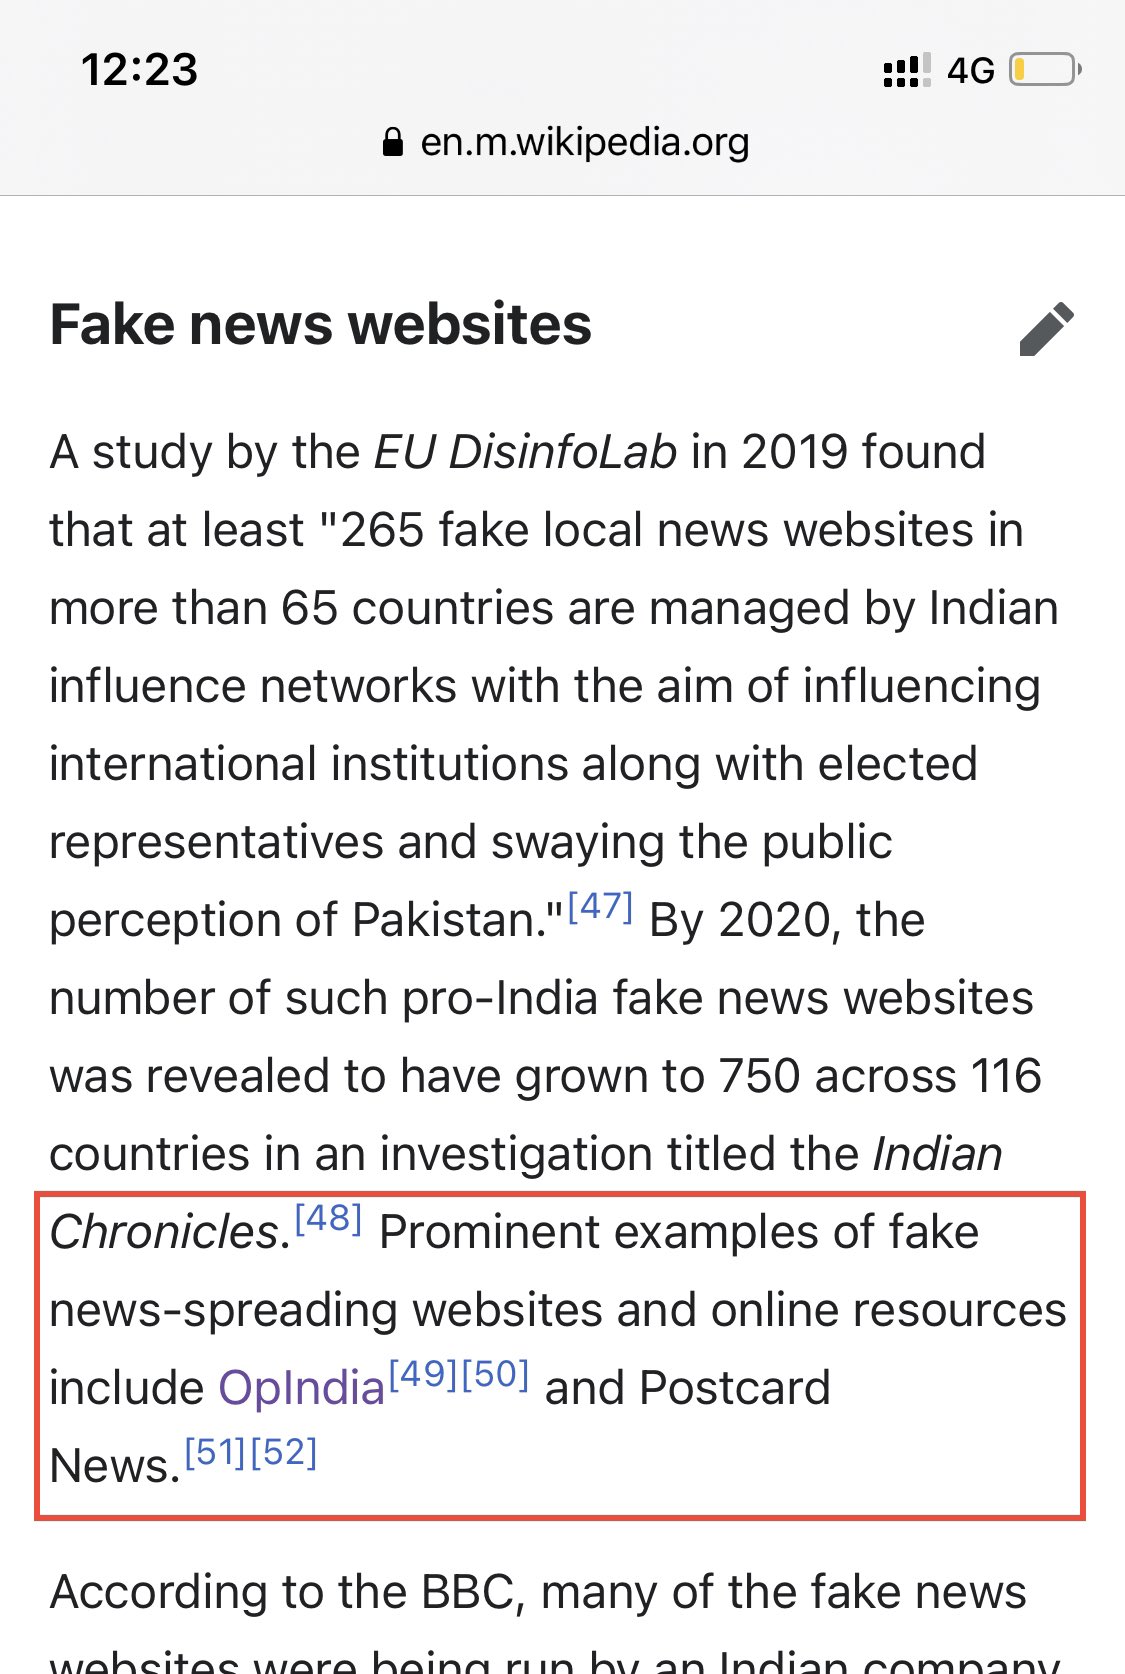 Fake news - Wikipedia